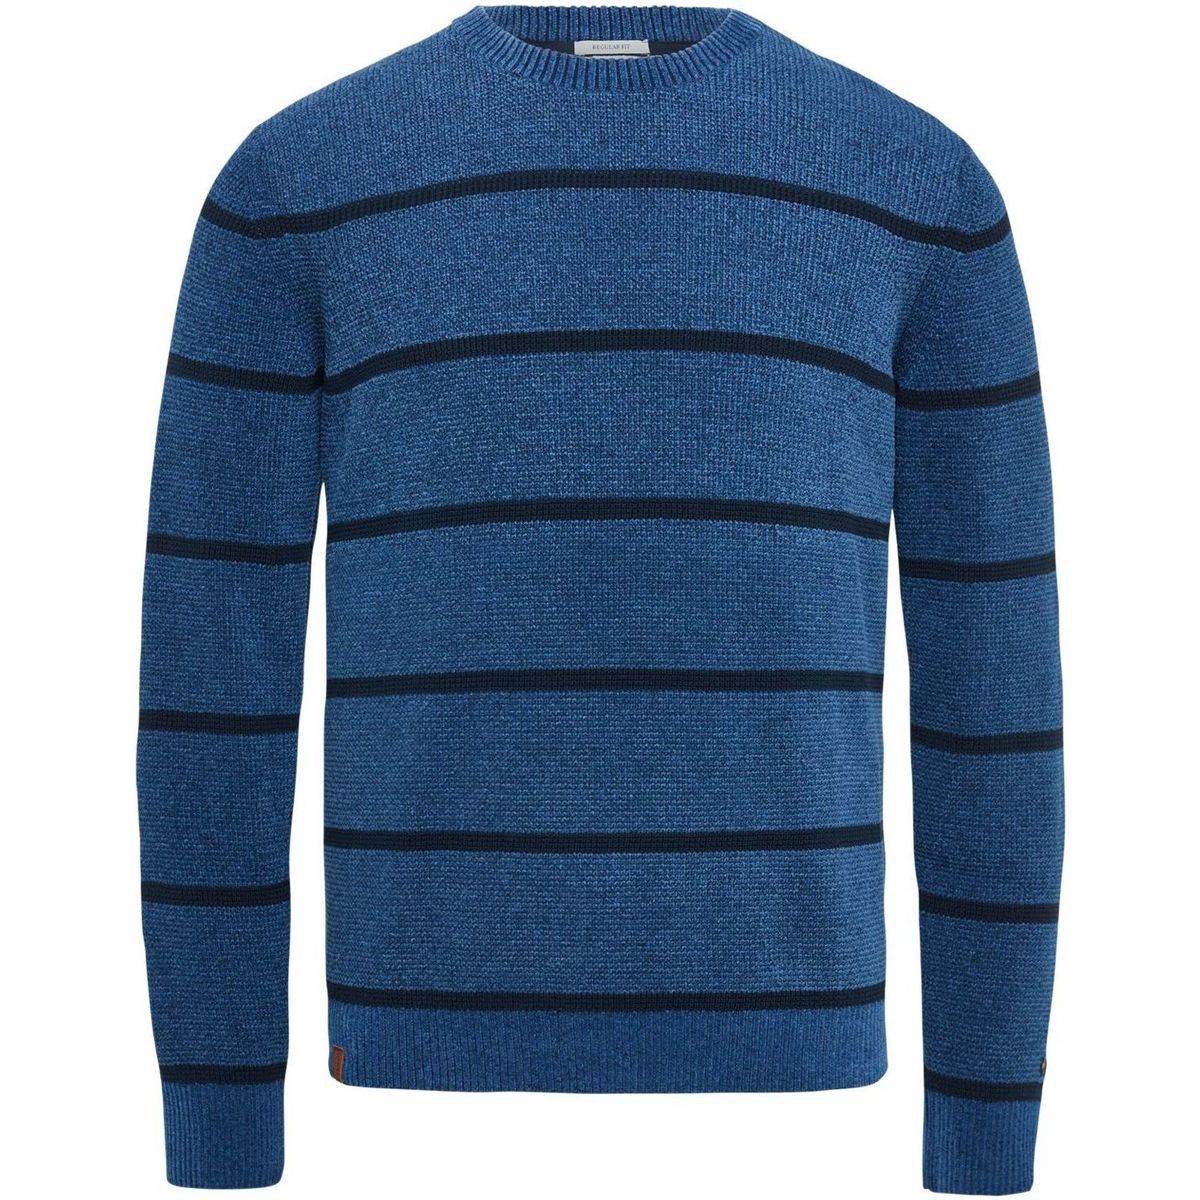 Textiel Heren Sweaters / Sweatshirts Cast Iron Trui Gesrteept Donkerblauw Blauw